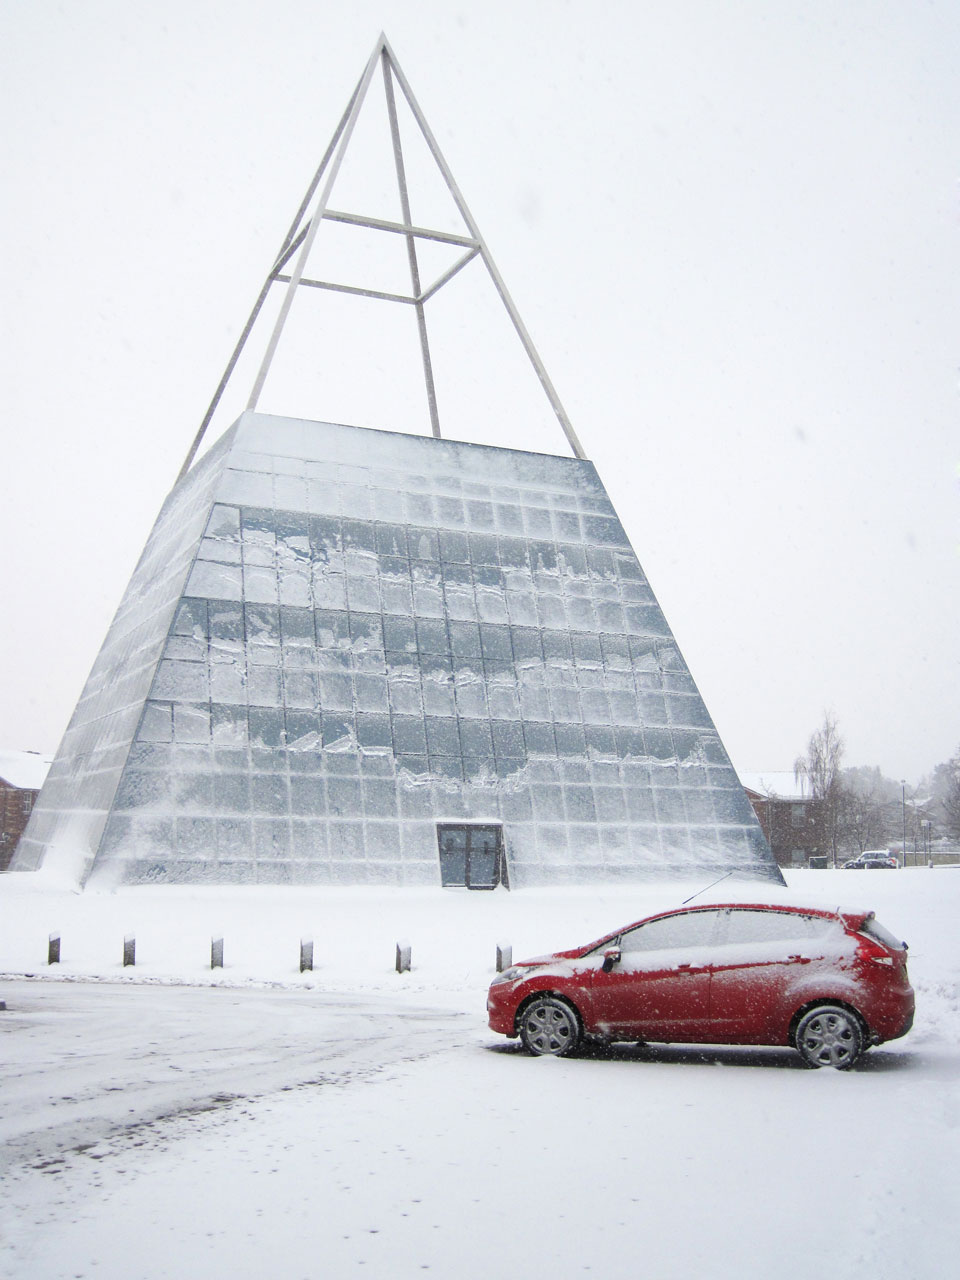 Pyramide en hiver